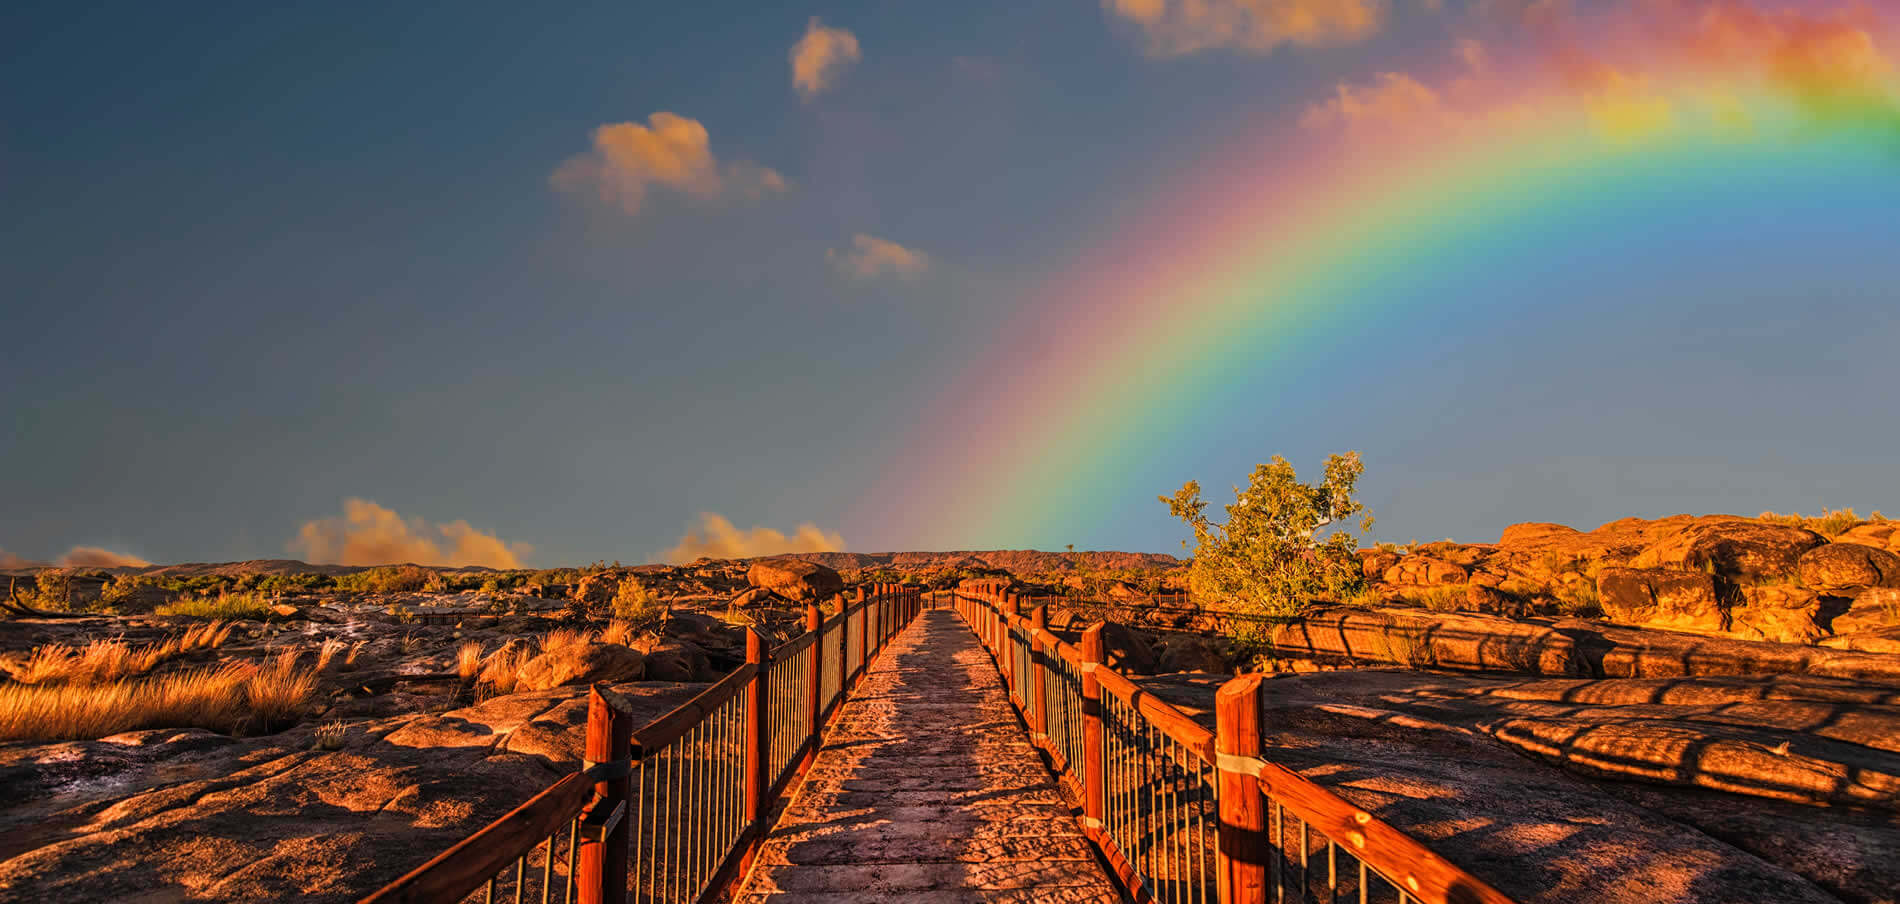 Rainbow over wooden bridge in dessert